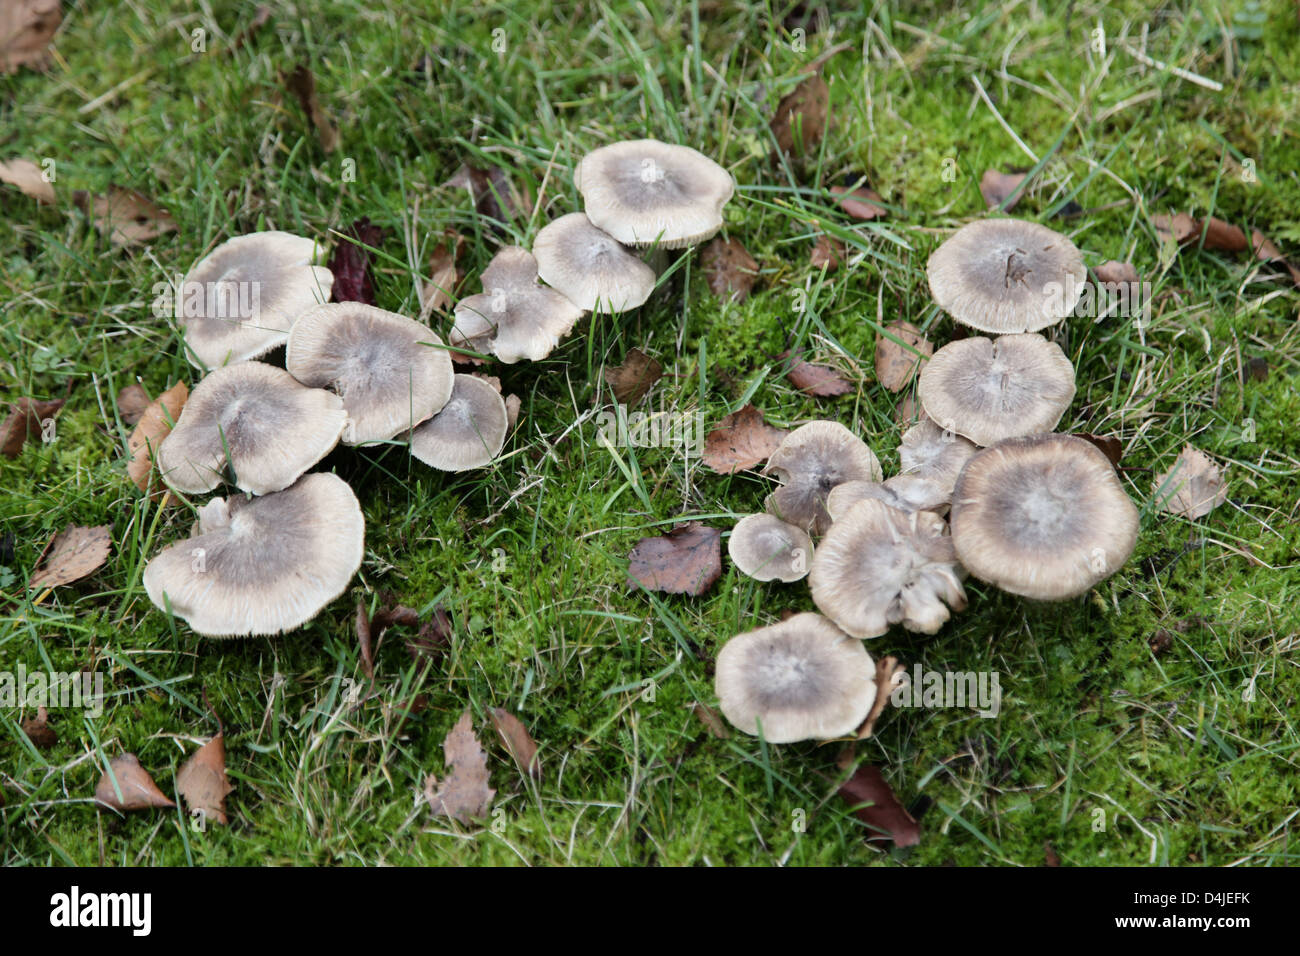 C'est une photo de quelques champignons dans un jardin sur l'herbe verte. Il y a 16 Les champignons. Il y a peut-être un cadeau empoisonné Banque D'Images